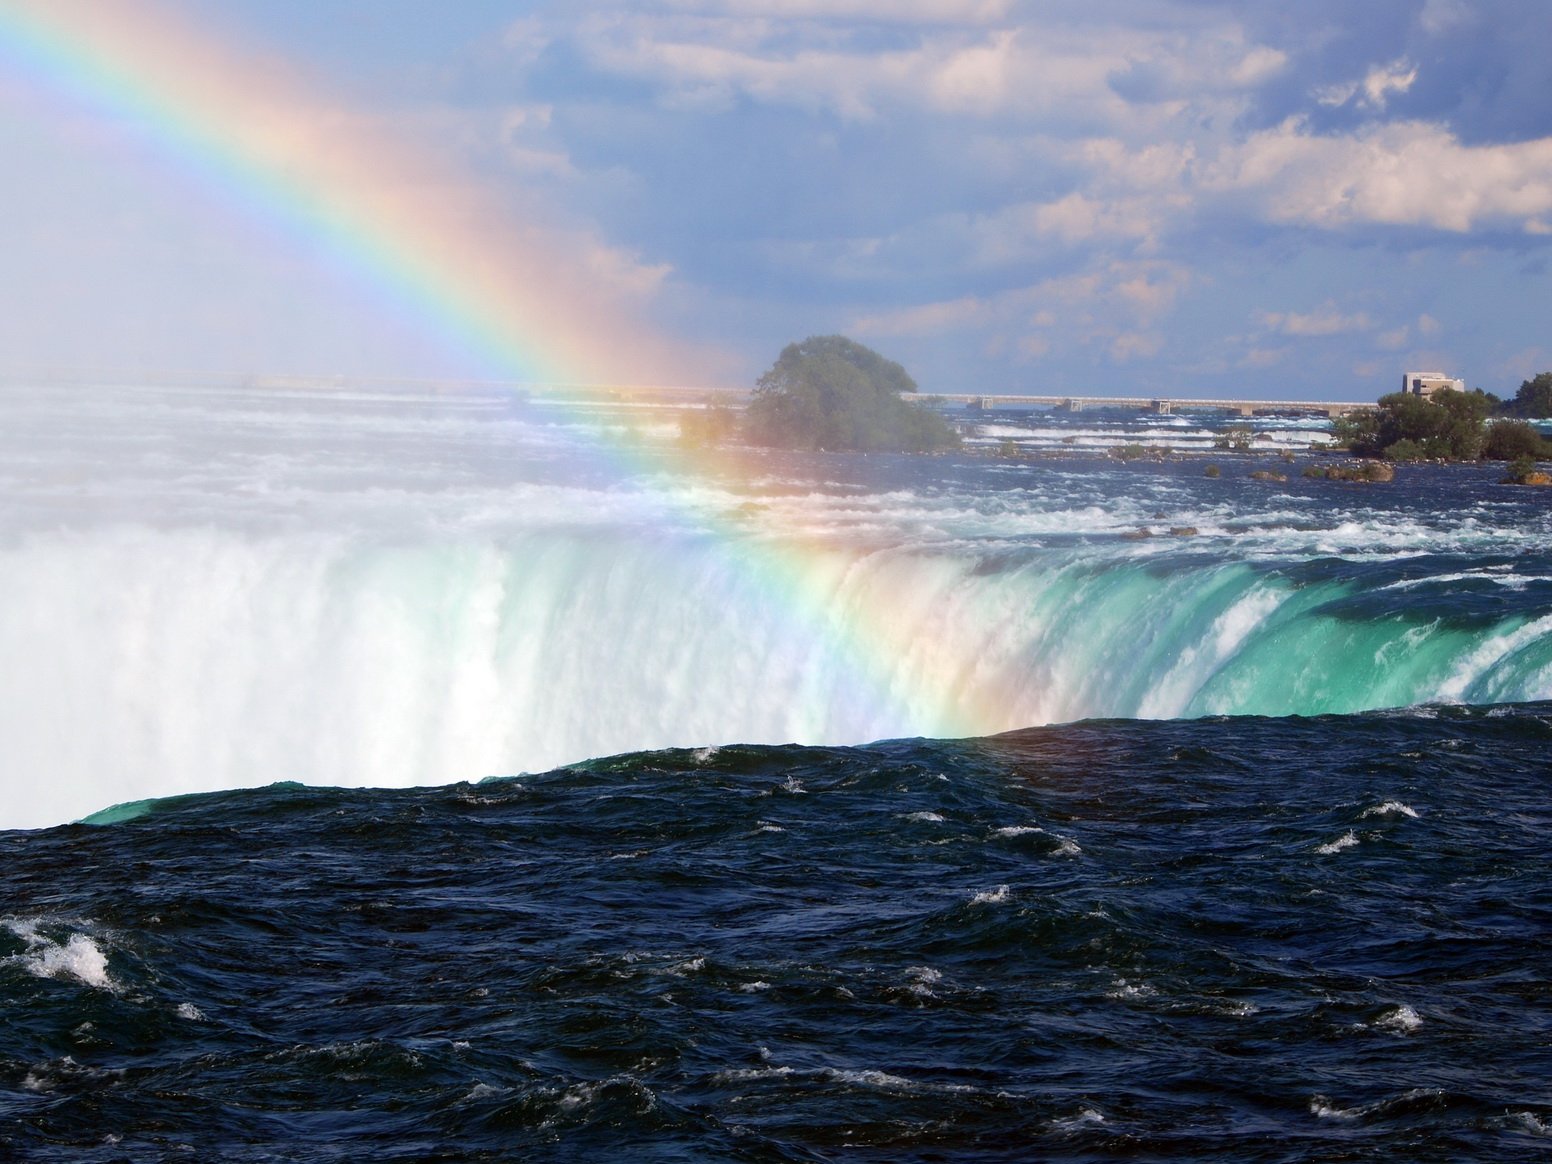 Niagara Falls, Ontario Canada and New York USA